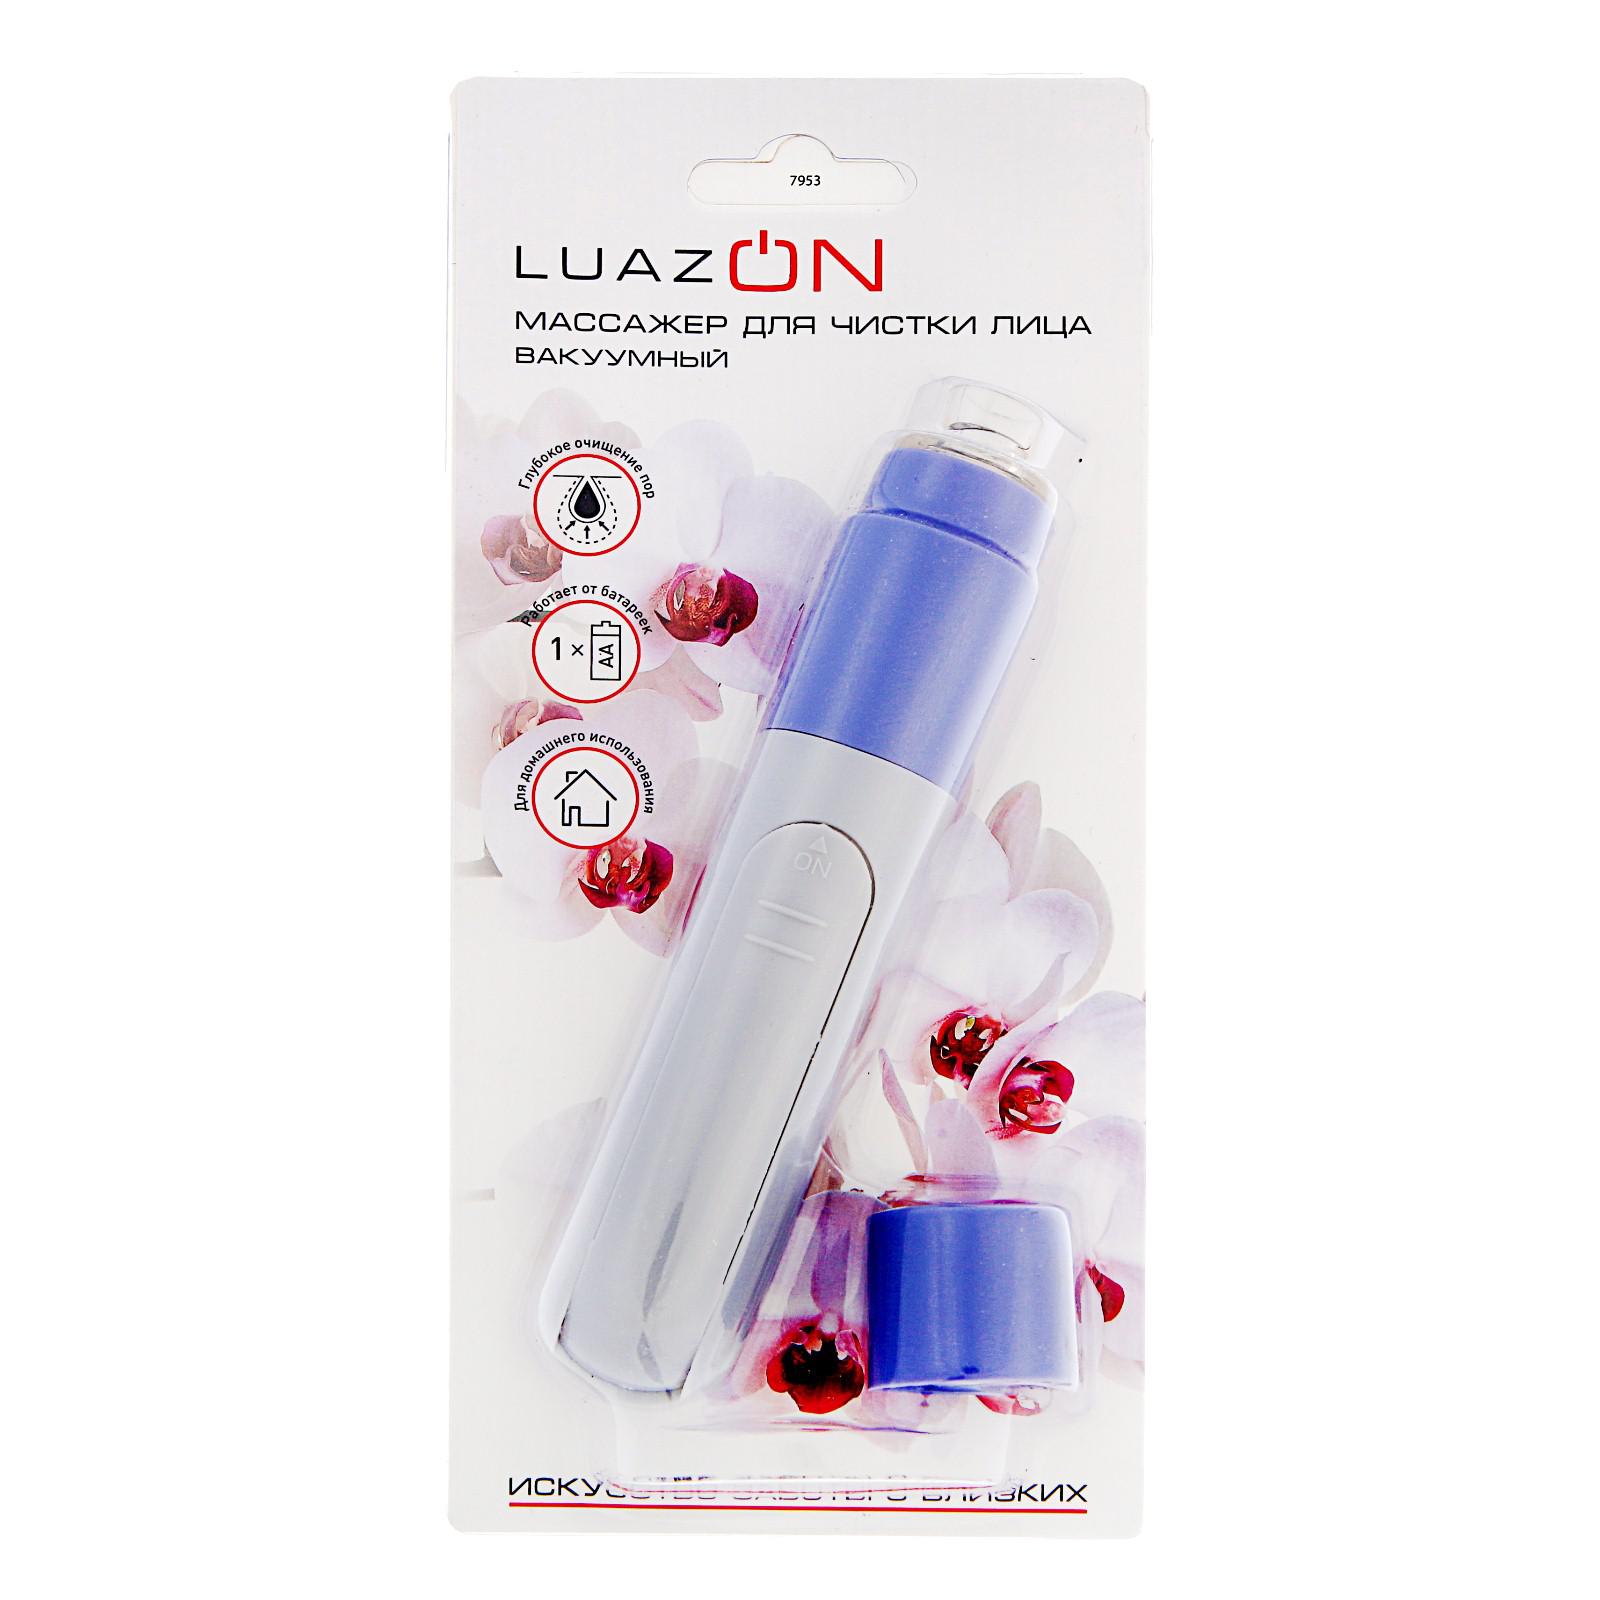 Массажёр Luazon Home для лица LEM-30 вакуумный 1хAA не в комплекте - фото 7